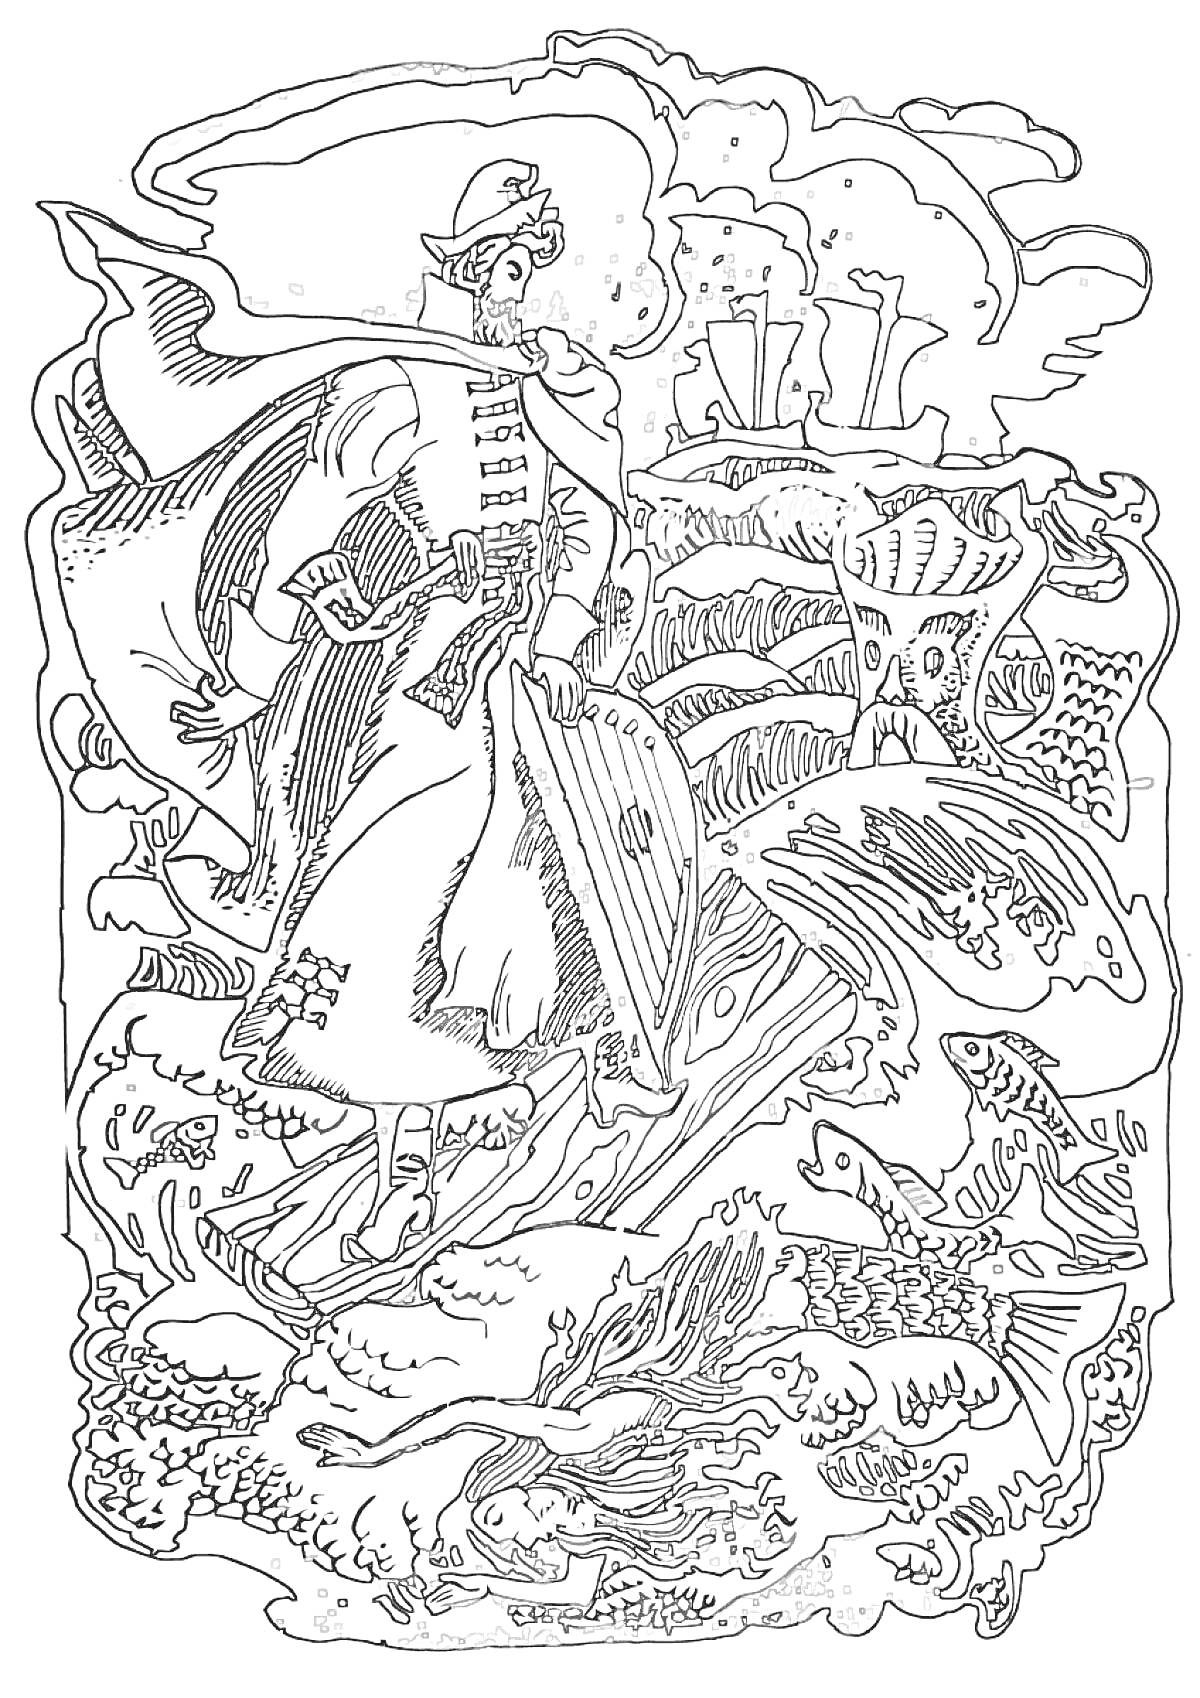 Раскраска Садко на морском дне с гуслями, окружённый рыбами и морскими существами